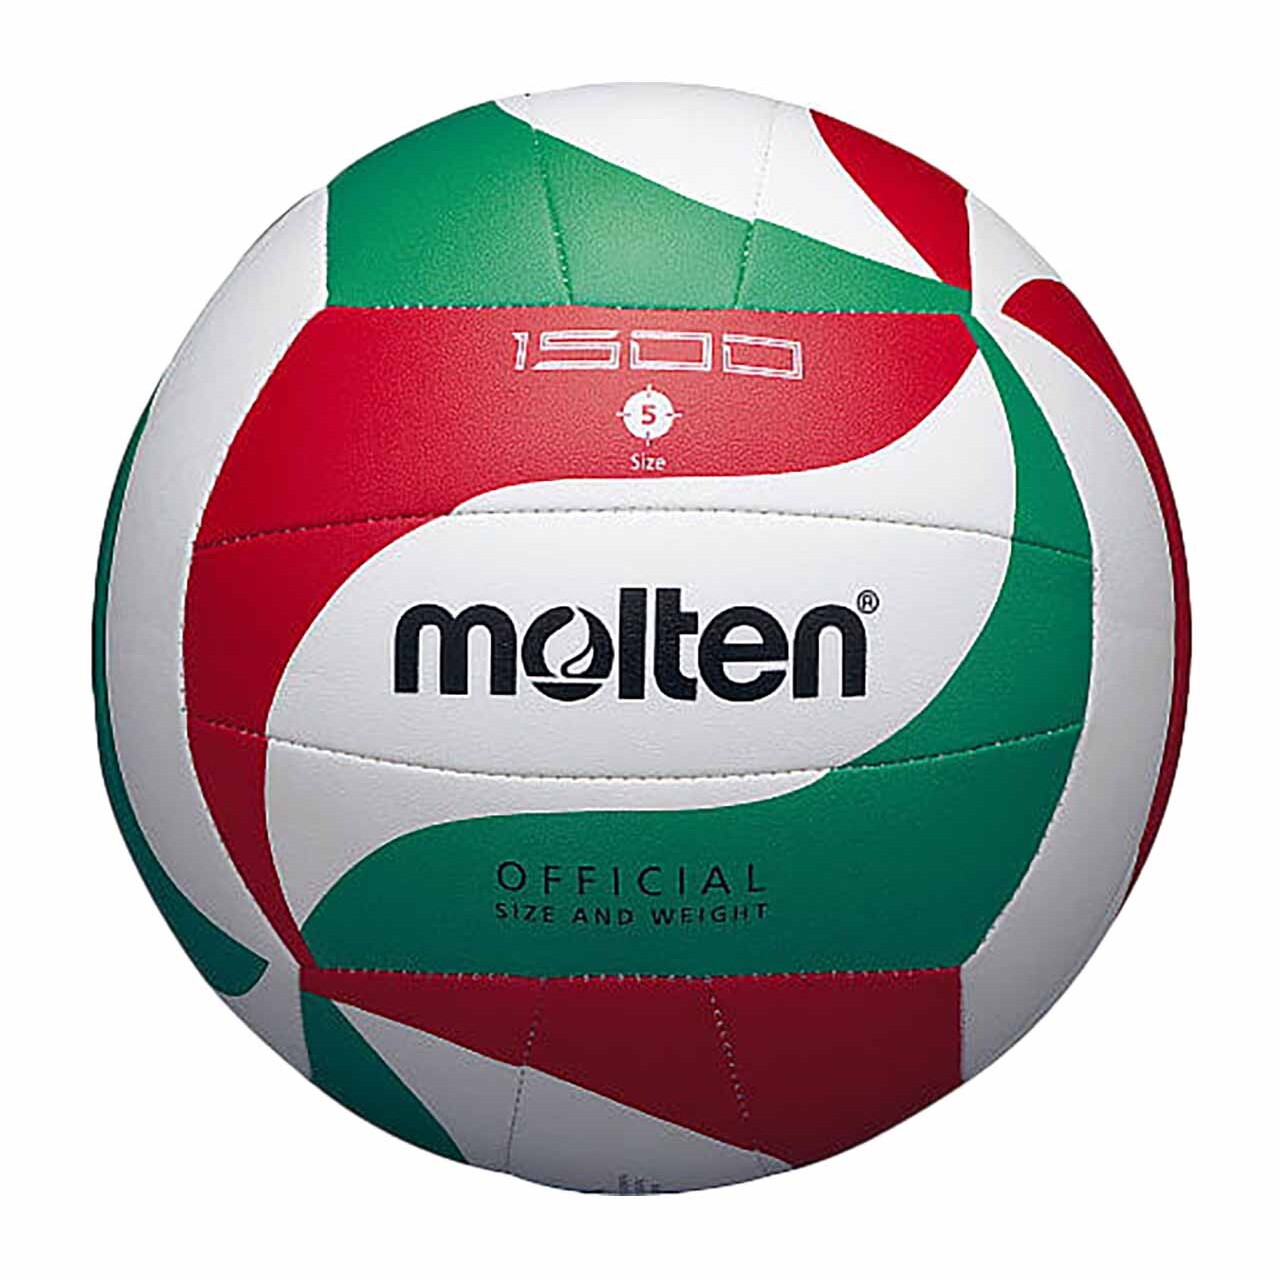 sport service italia pallavolo palloni volley molten v5m1500 uai - Palloni - Sport Service Italia